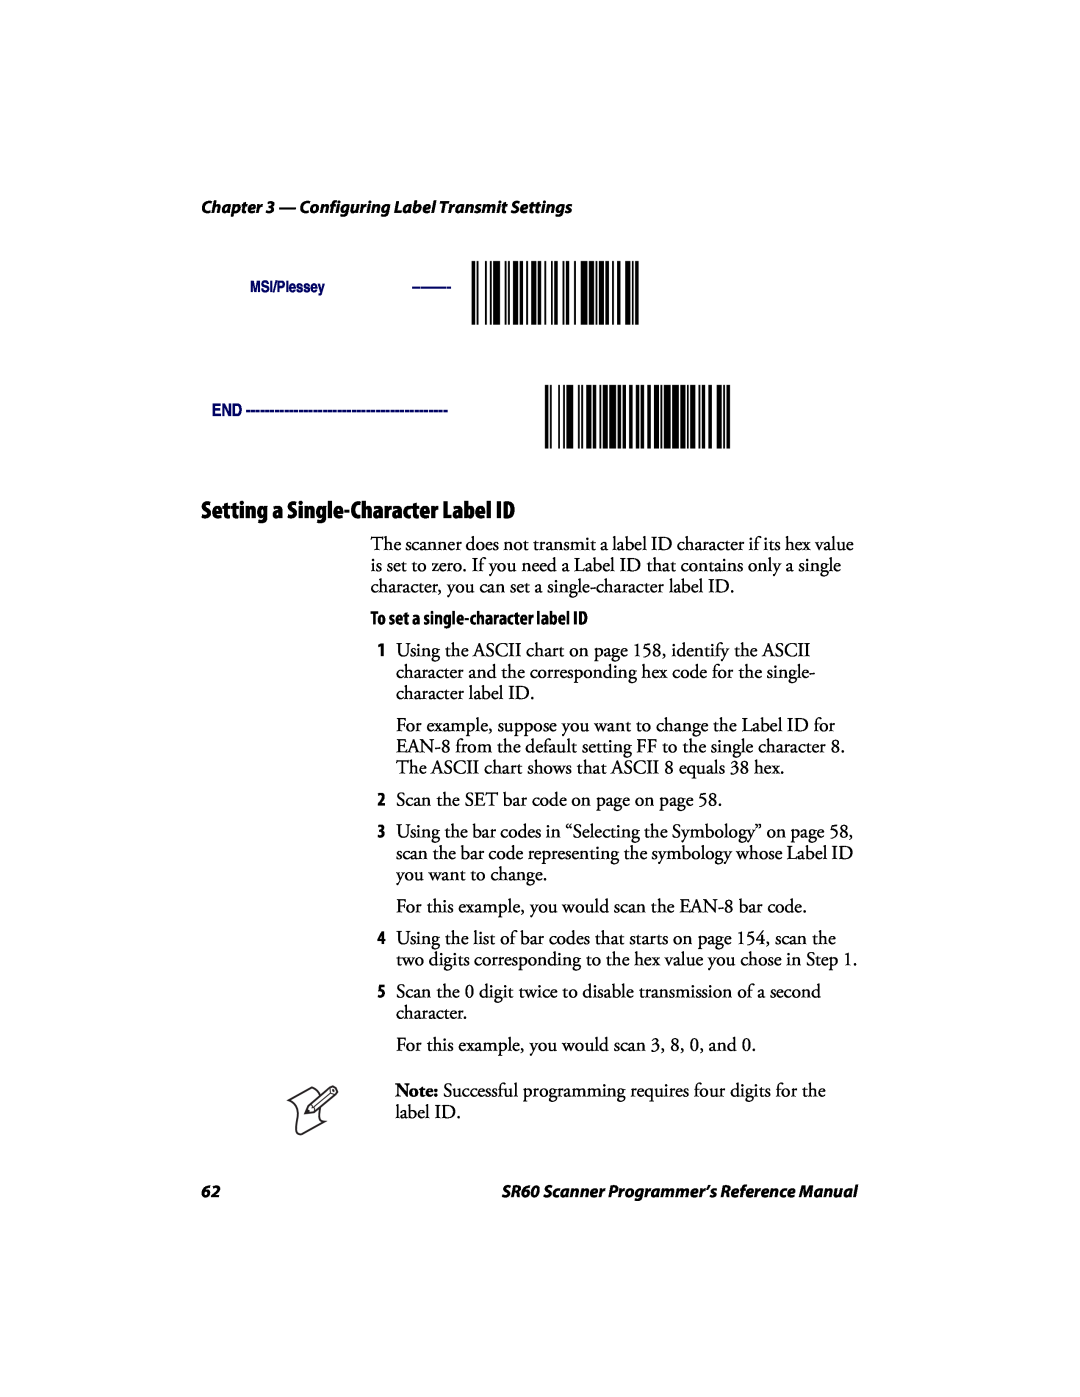 Intermec SR60 manual Setting a Single-Character Label ID, To set a single-character label ID 